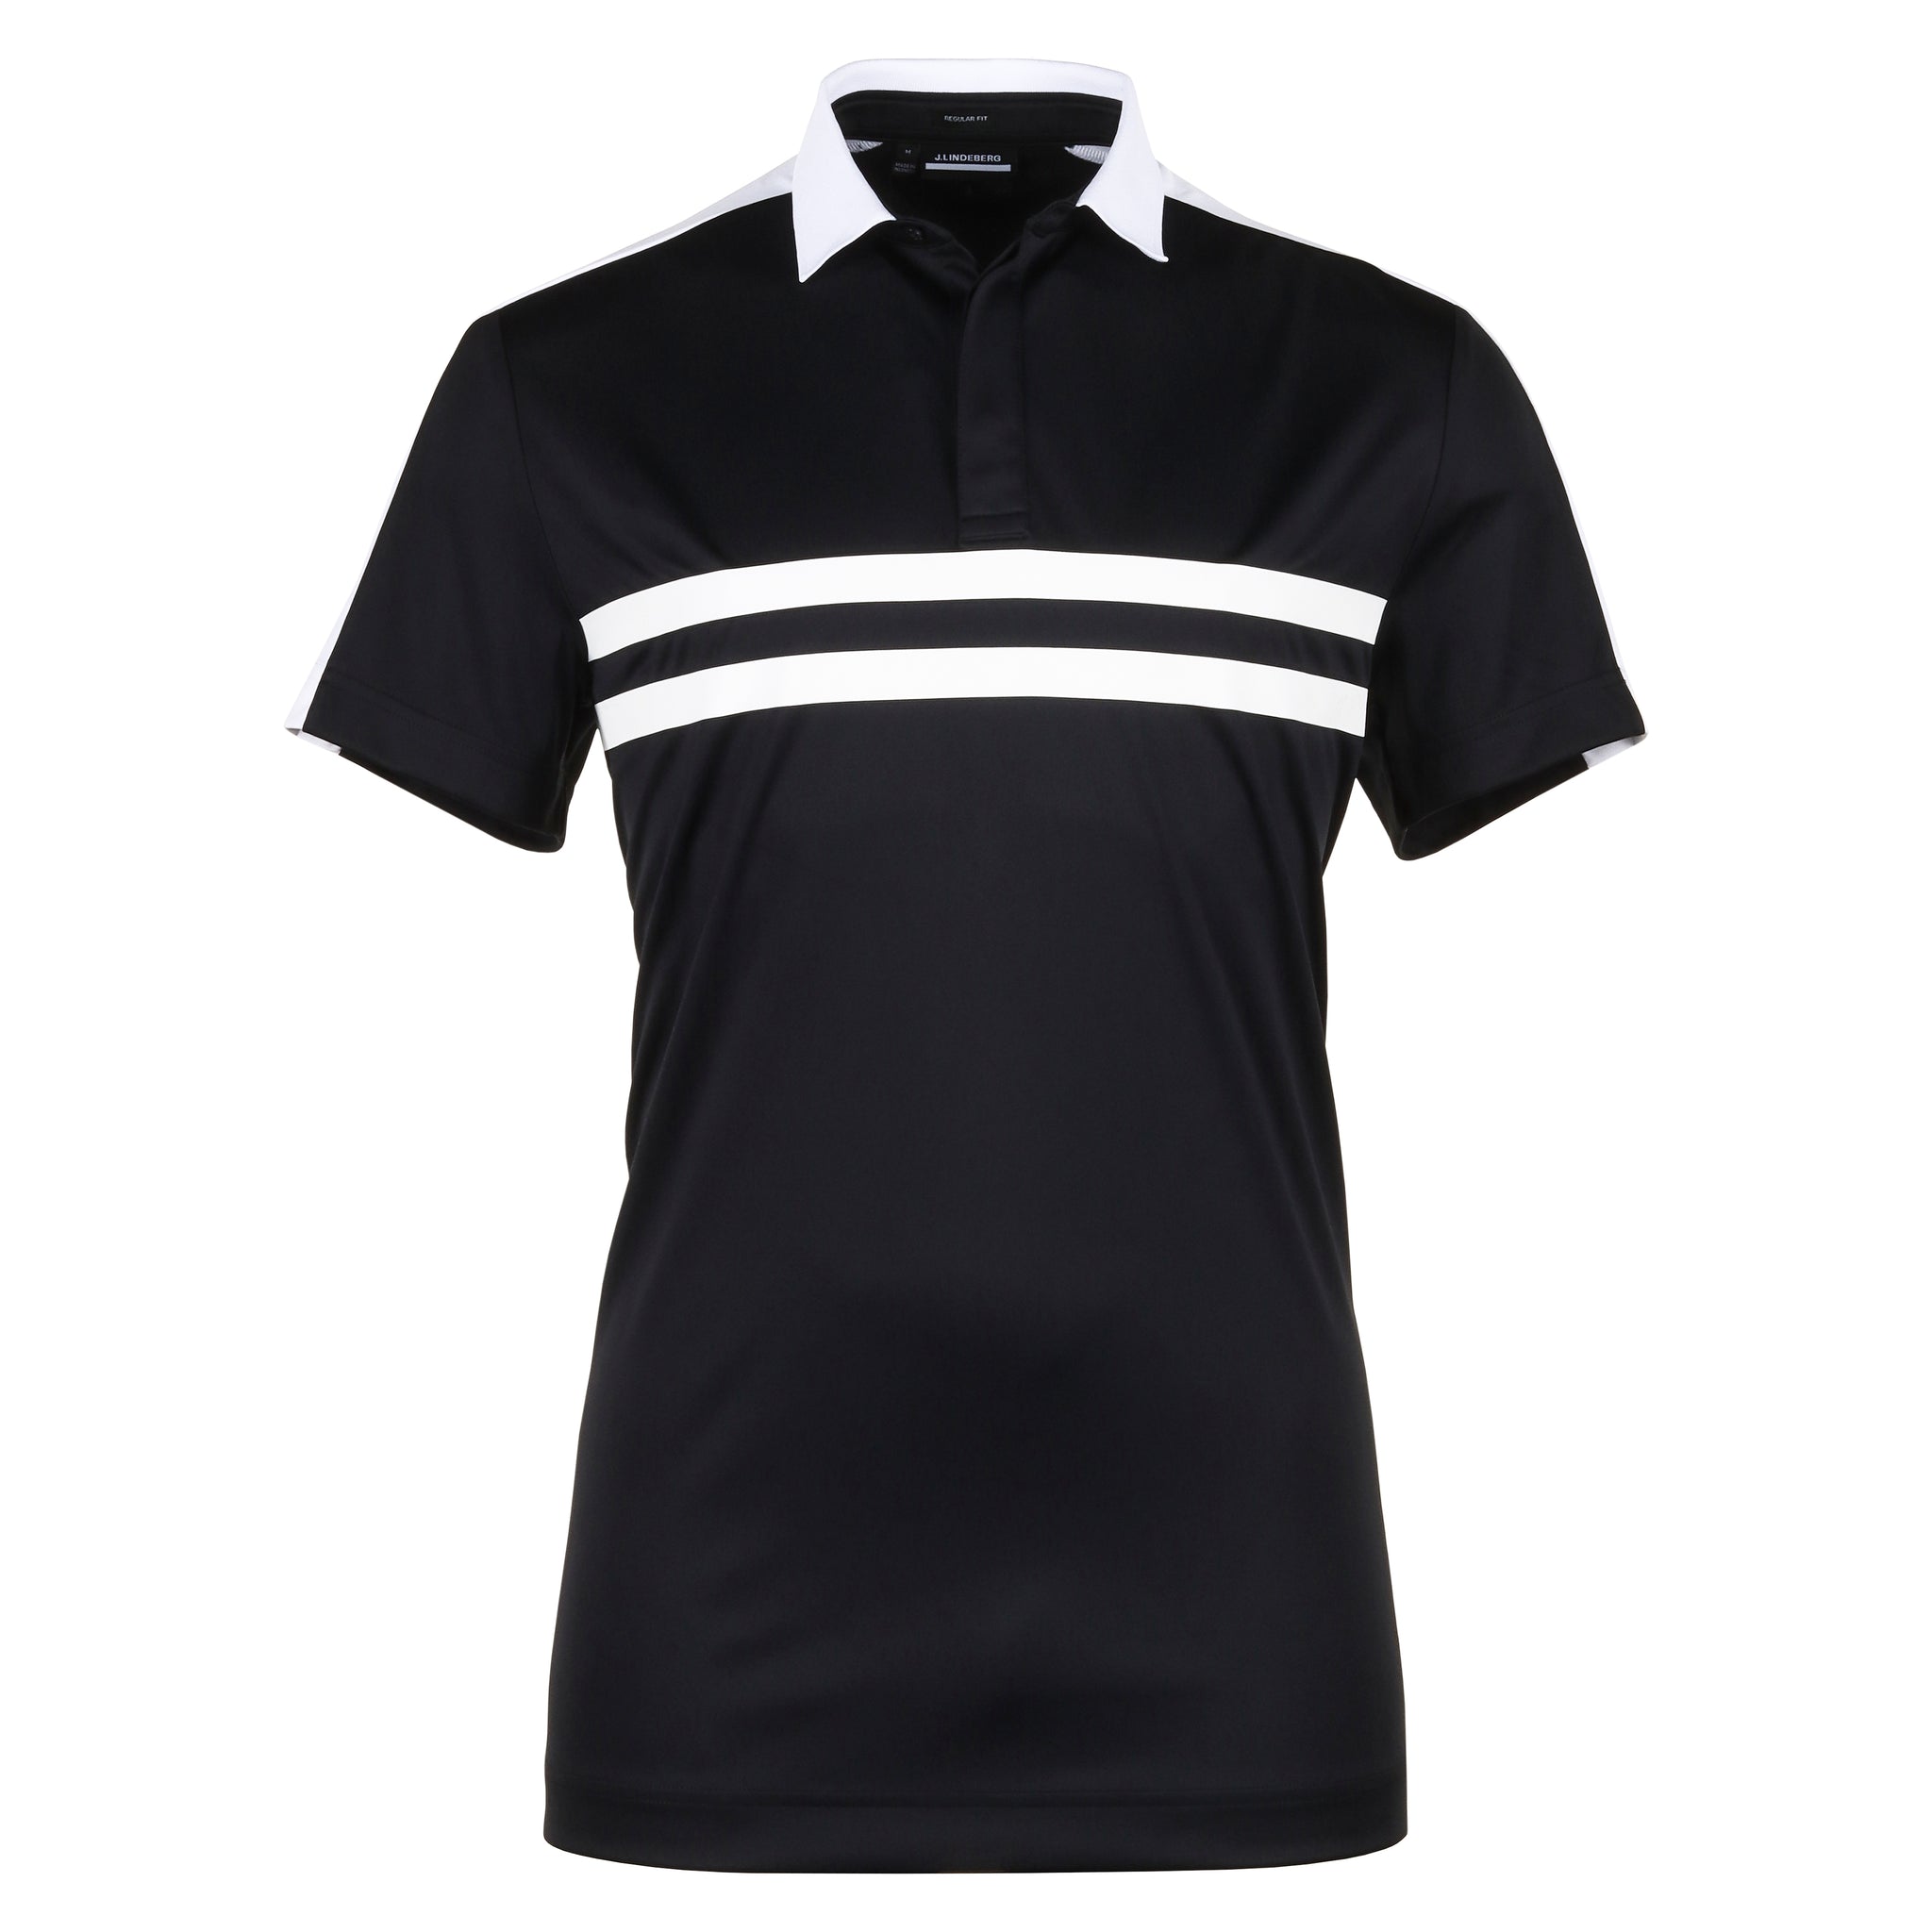 j-lindeberg-golf-armand-polo-shirt-gmjt10804-black-9999